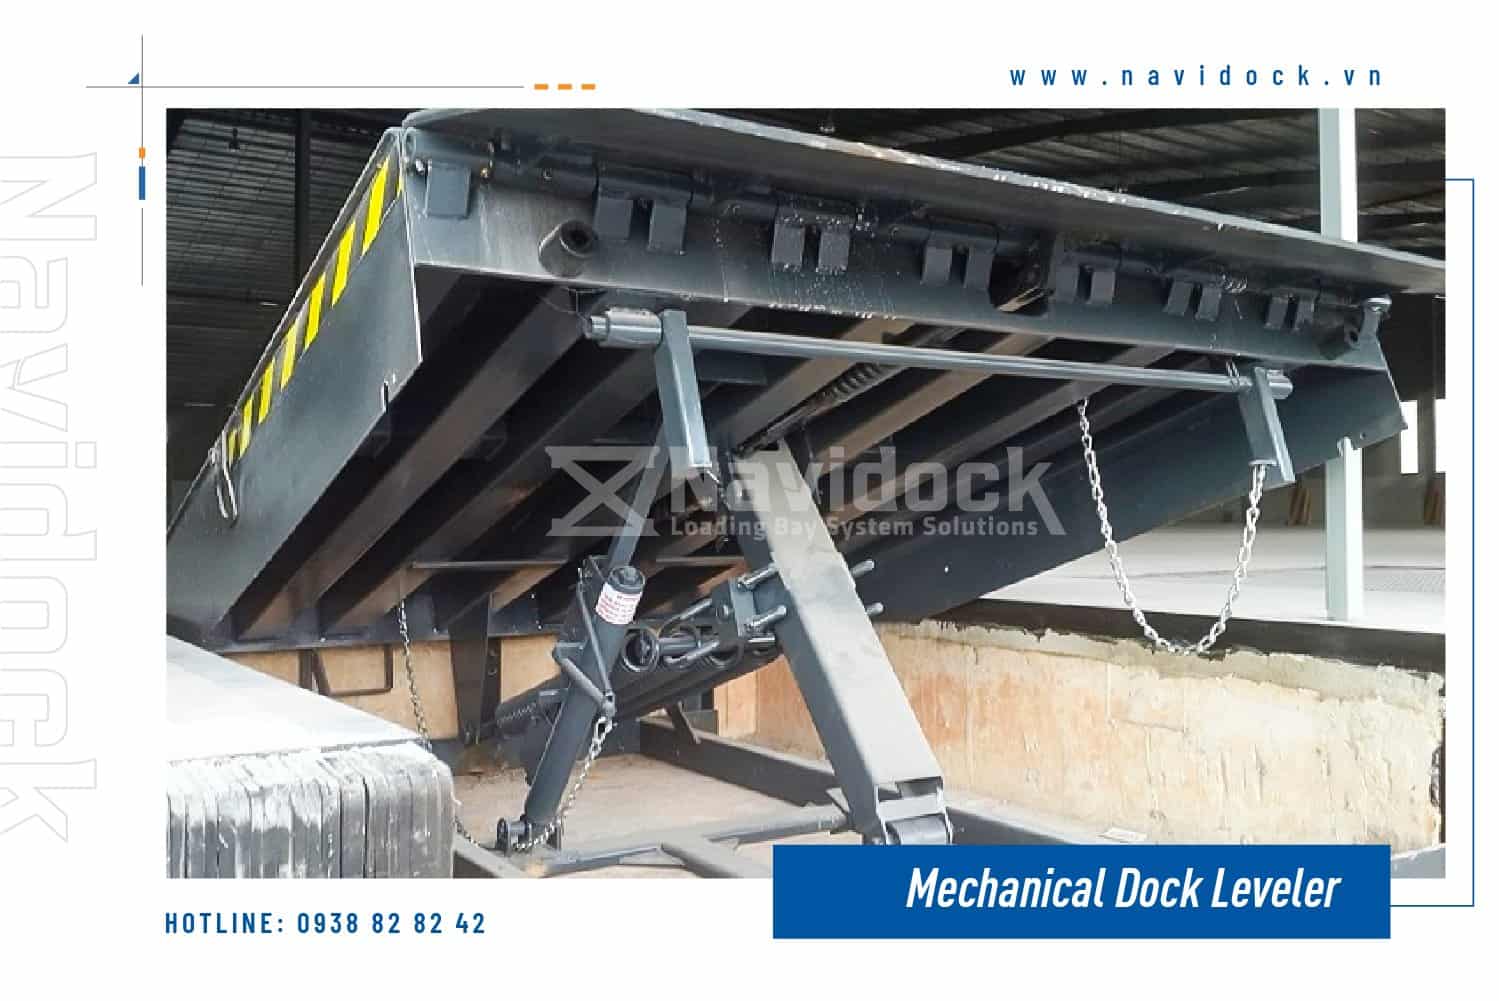 Dock leveler cơ khí màu đen đang được kéo lên